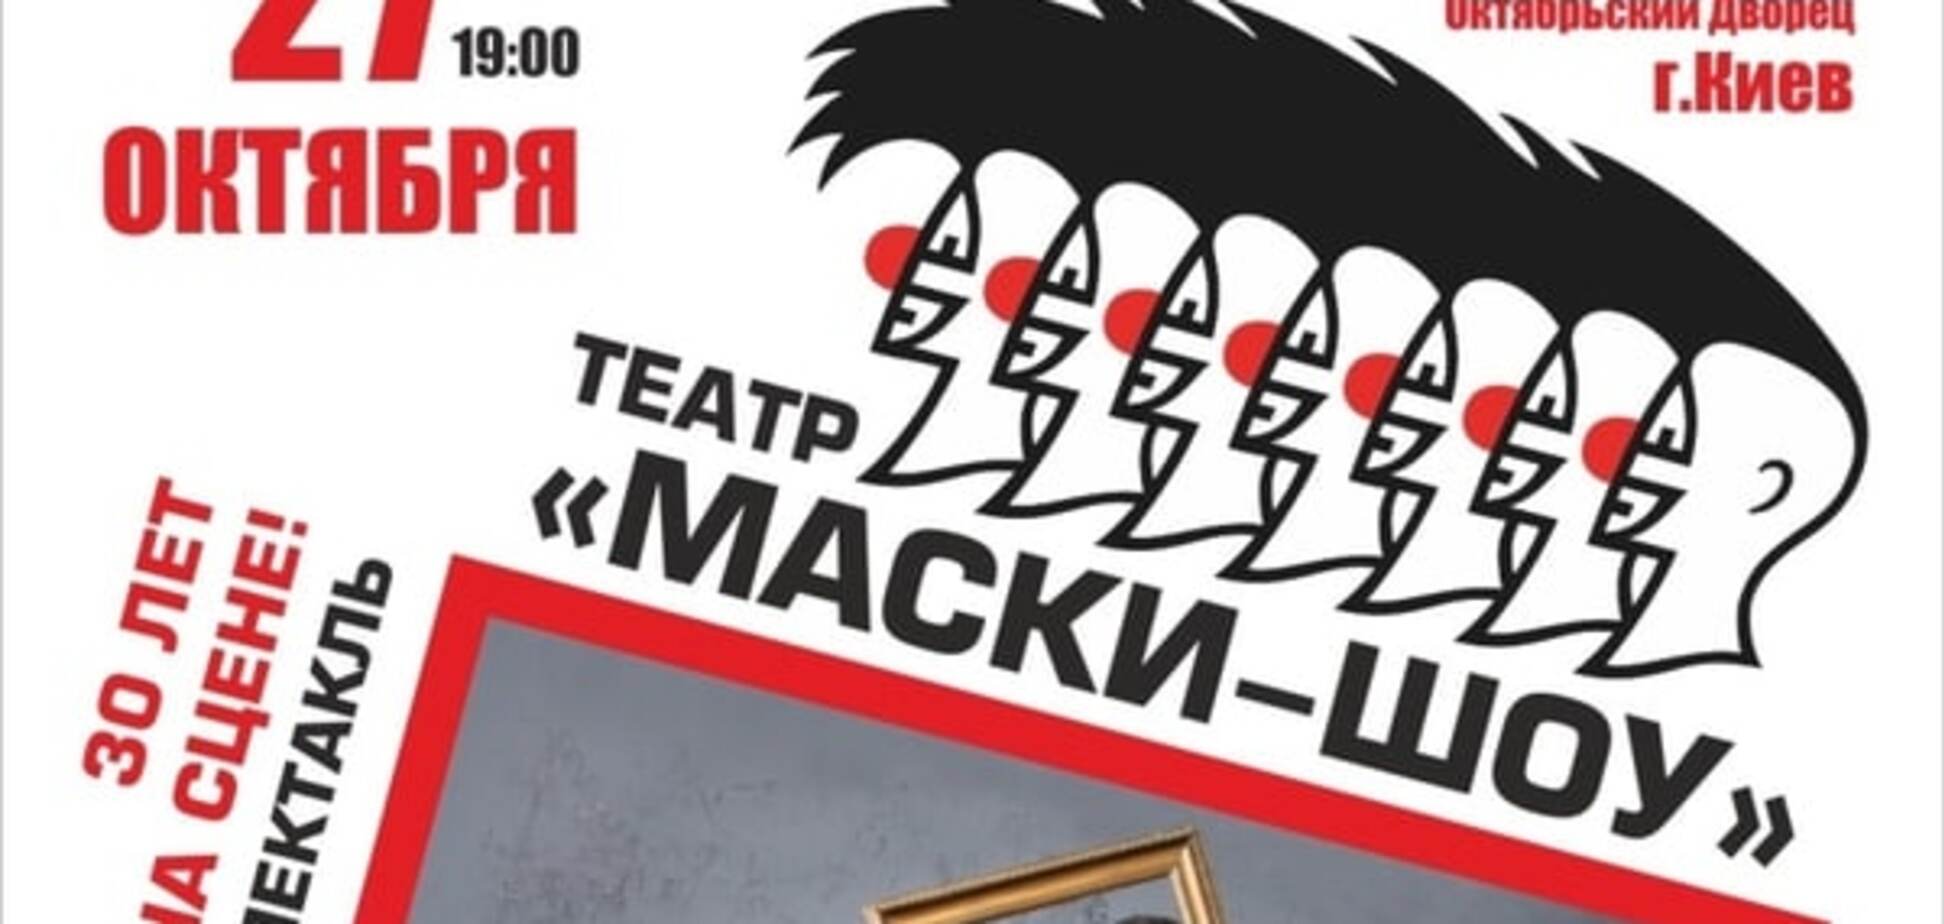 Легендарный театр 'маски-шоу' покажет в Киеве премьерное комедийное шоу в честь 30-летнего юбилея